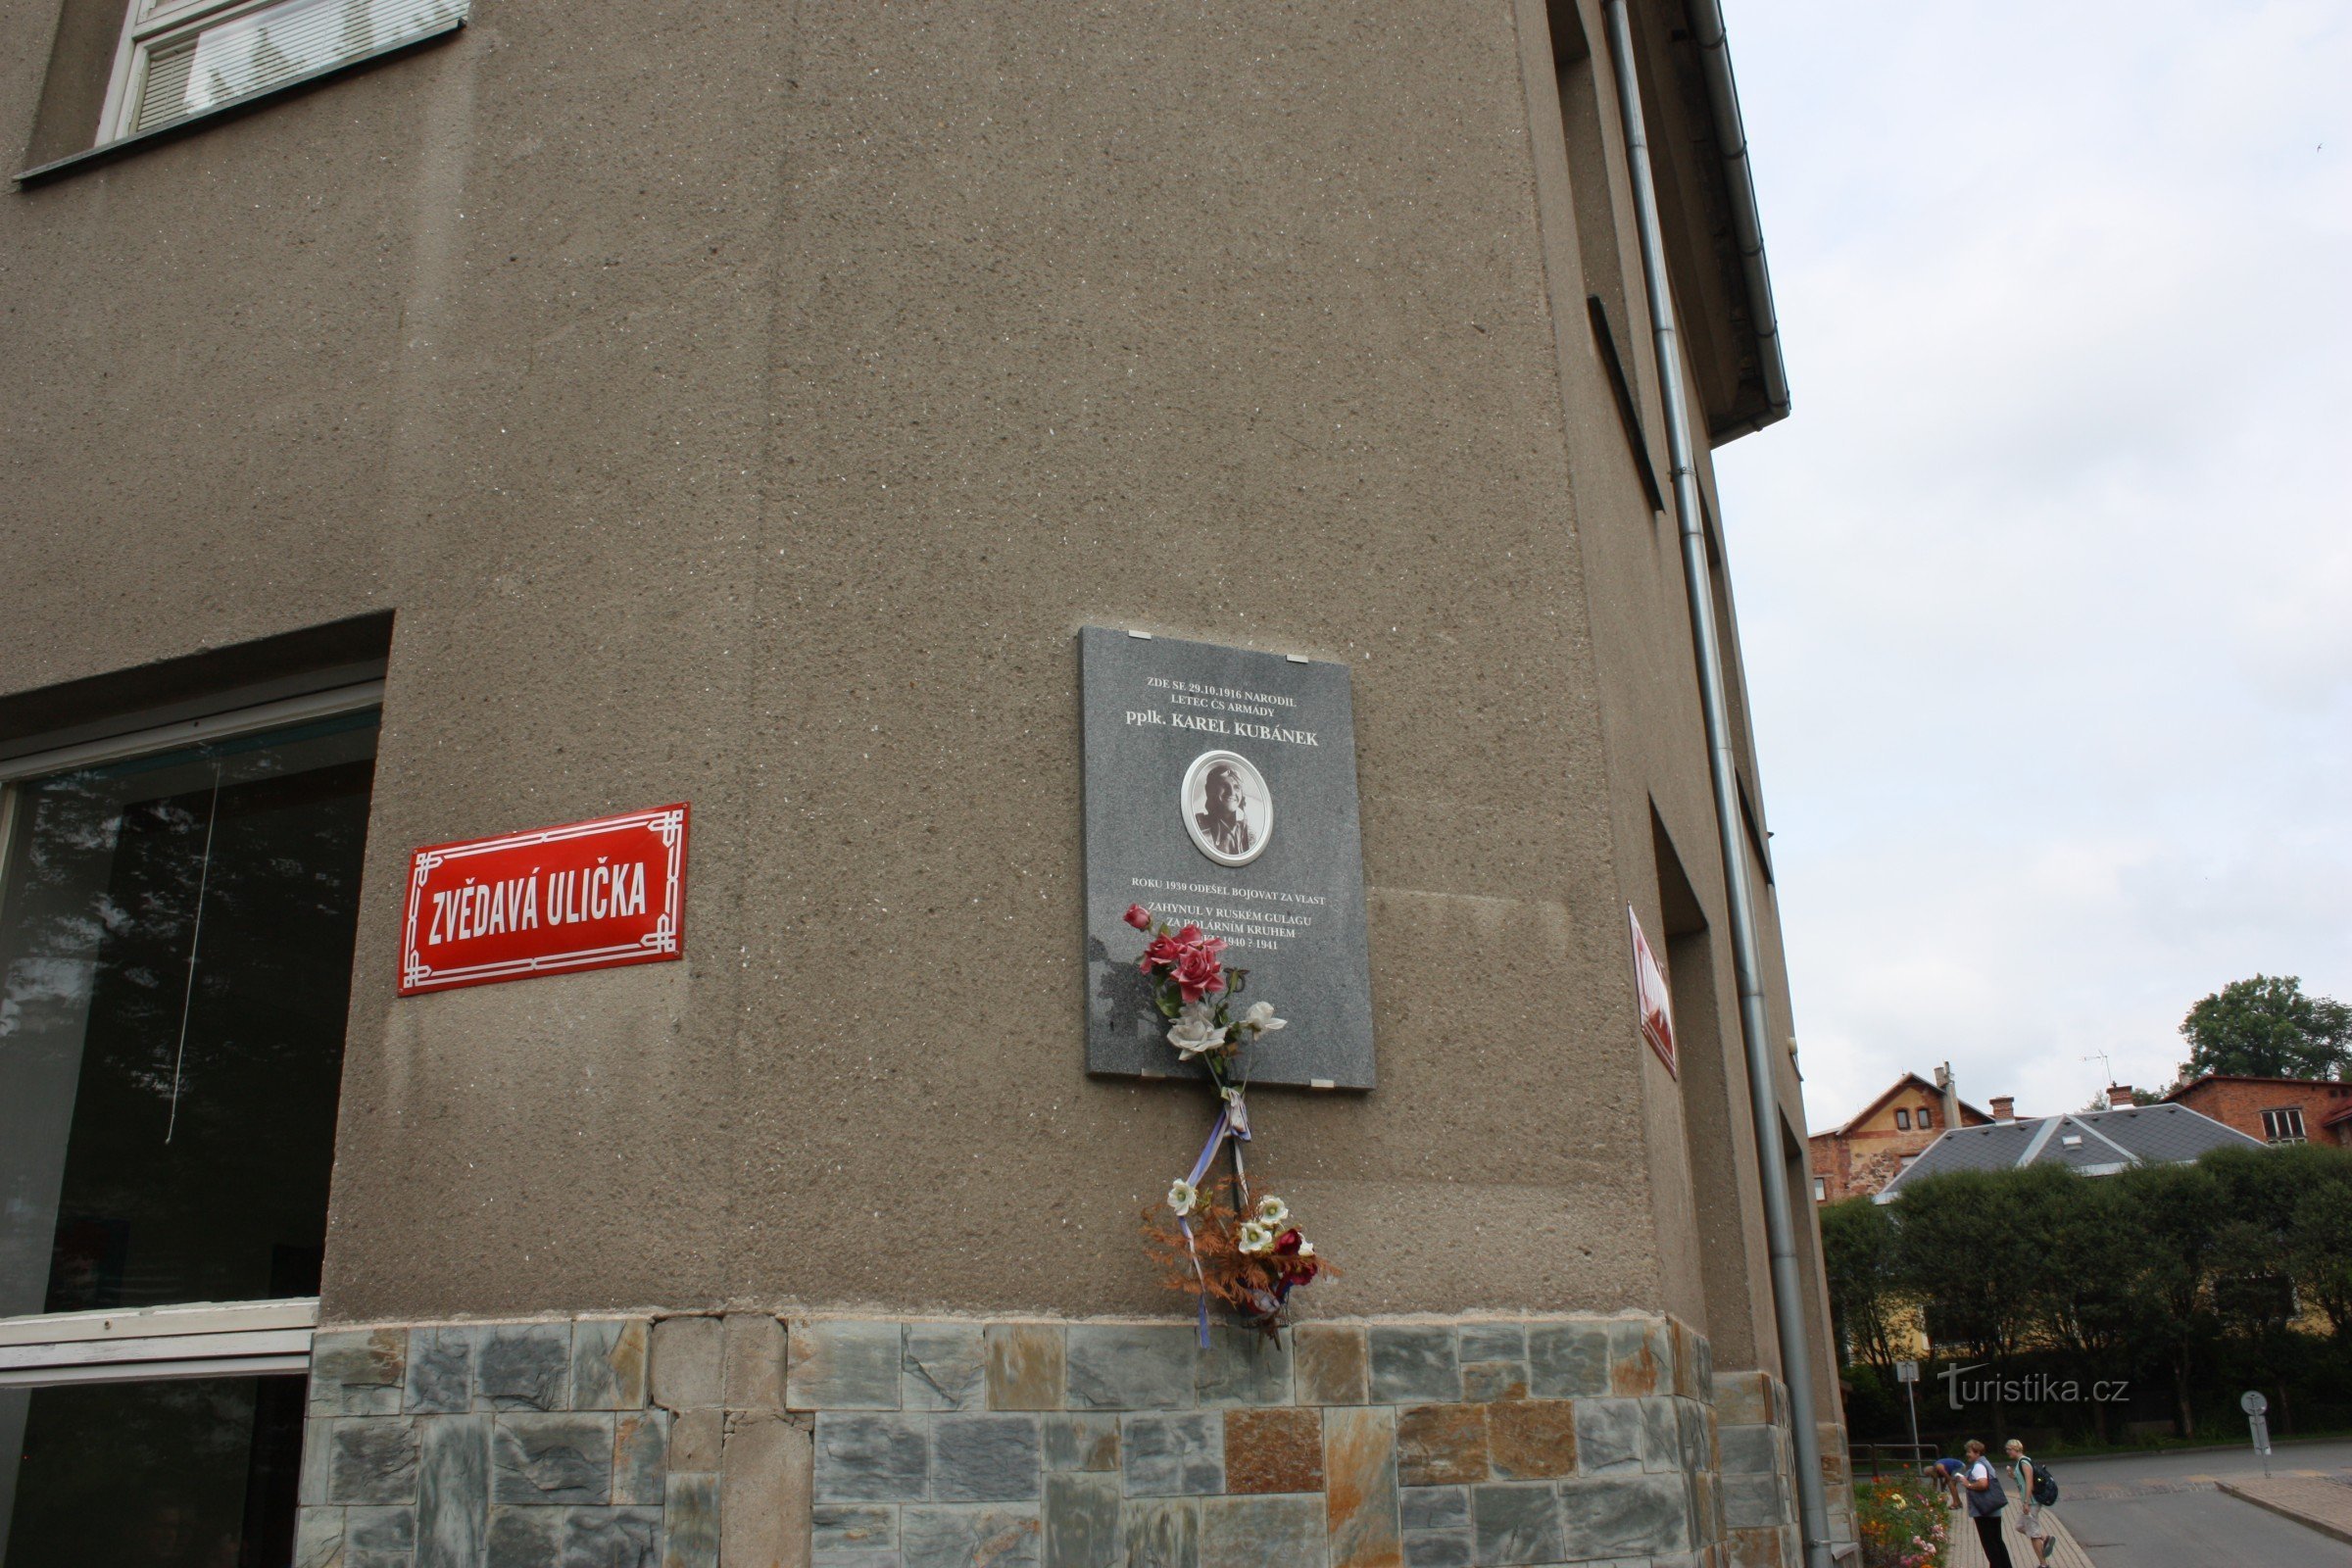 Targa commemorativa all'angolo di Zvědavá ulička a Jilemnice